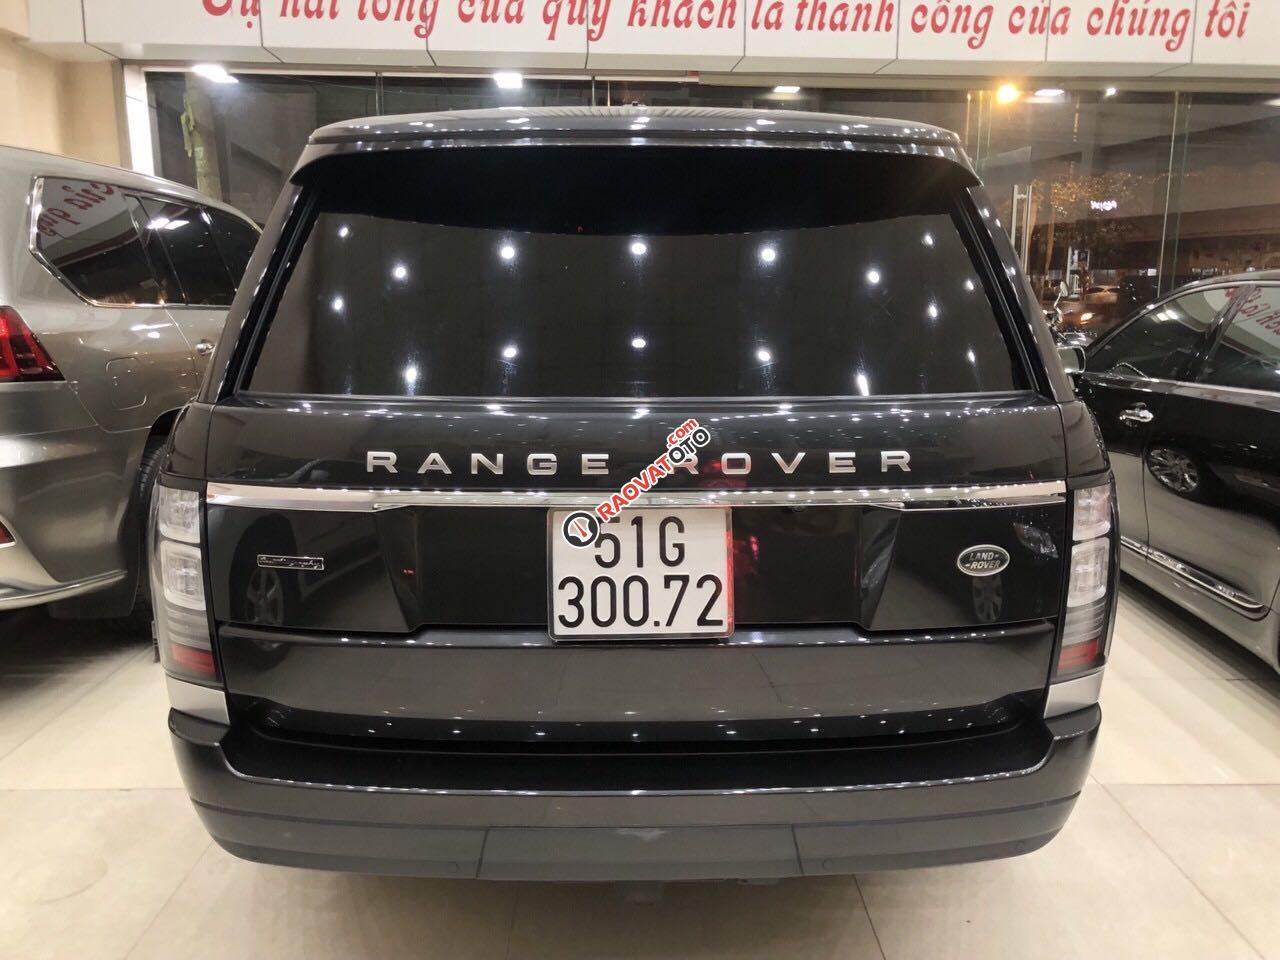 Cần bán xe LandRover Range Rover năm 2015, màu đen nhập khẩu nguyên chiếc-5